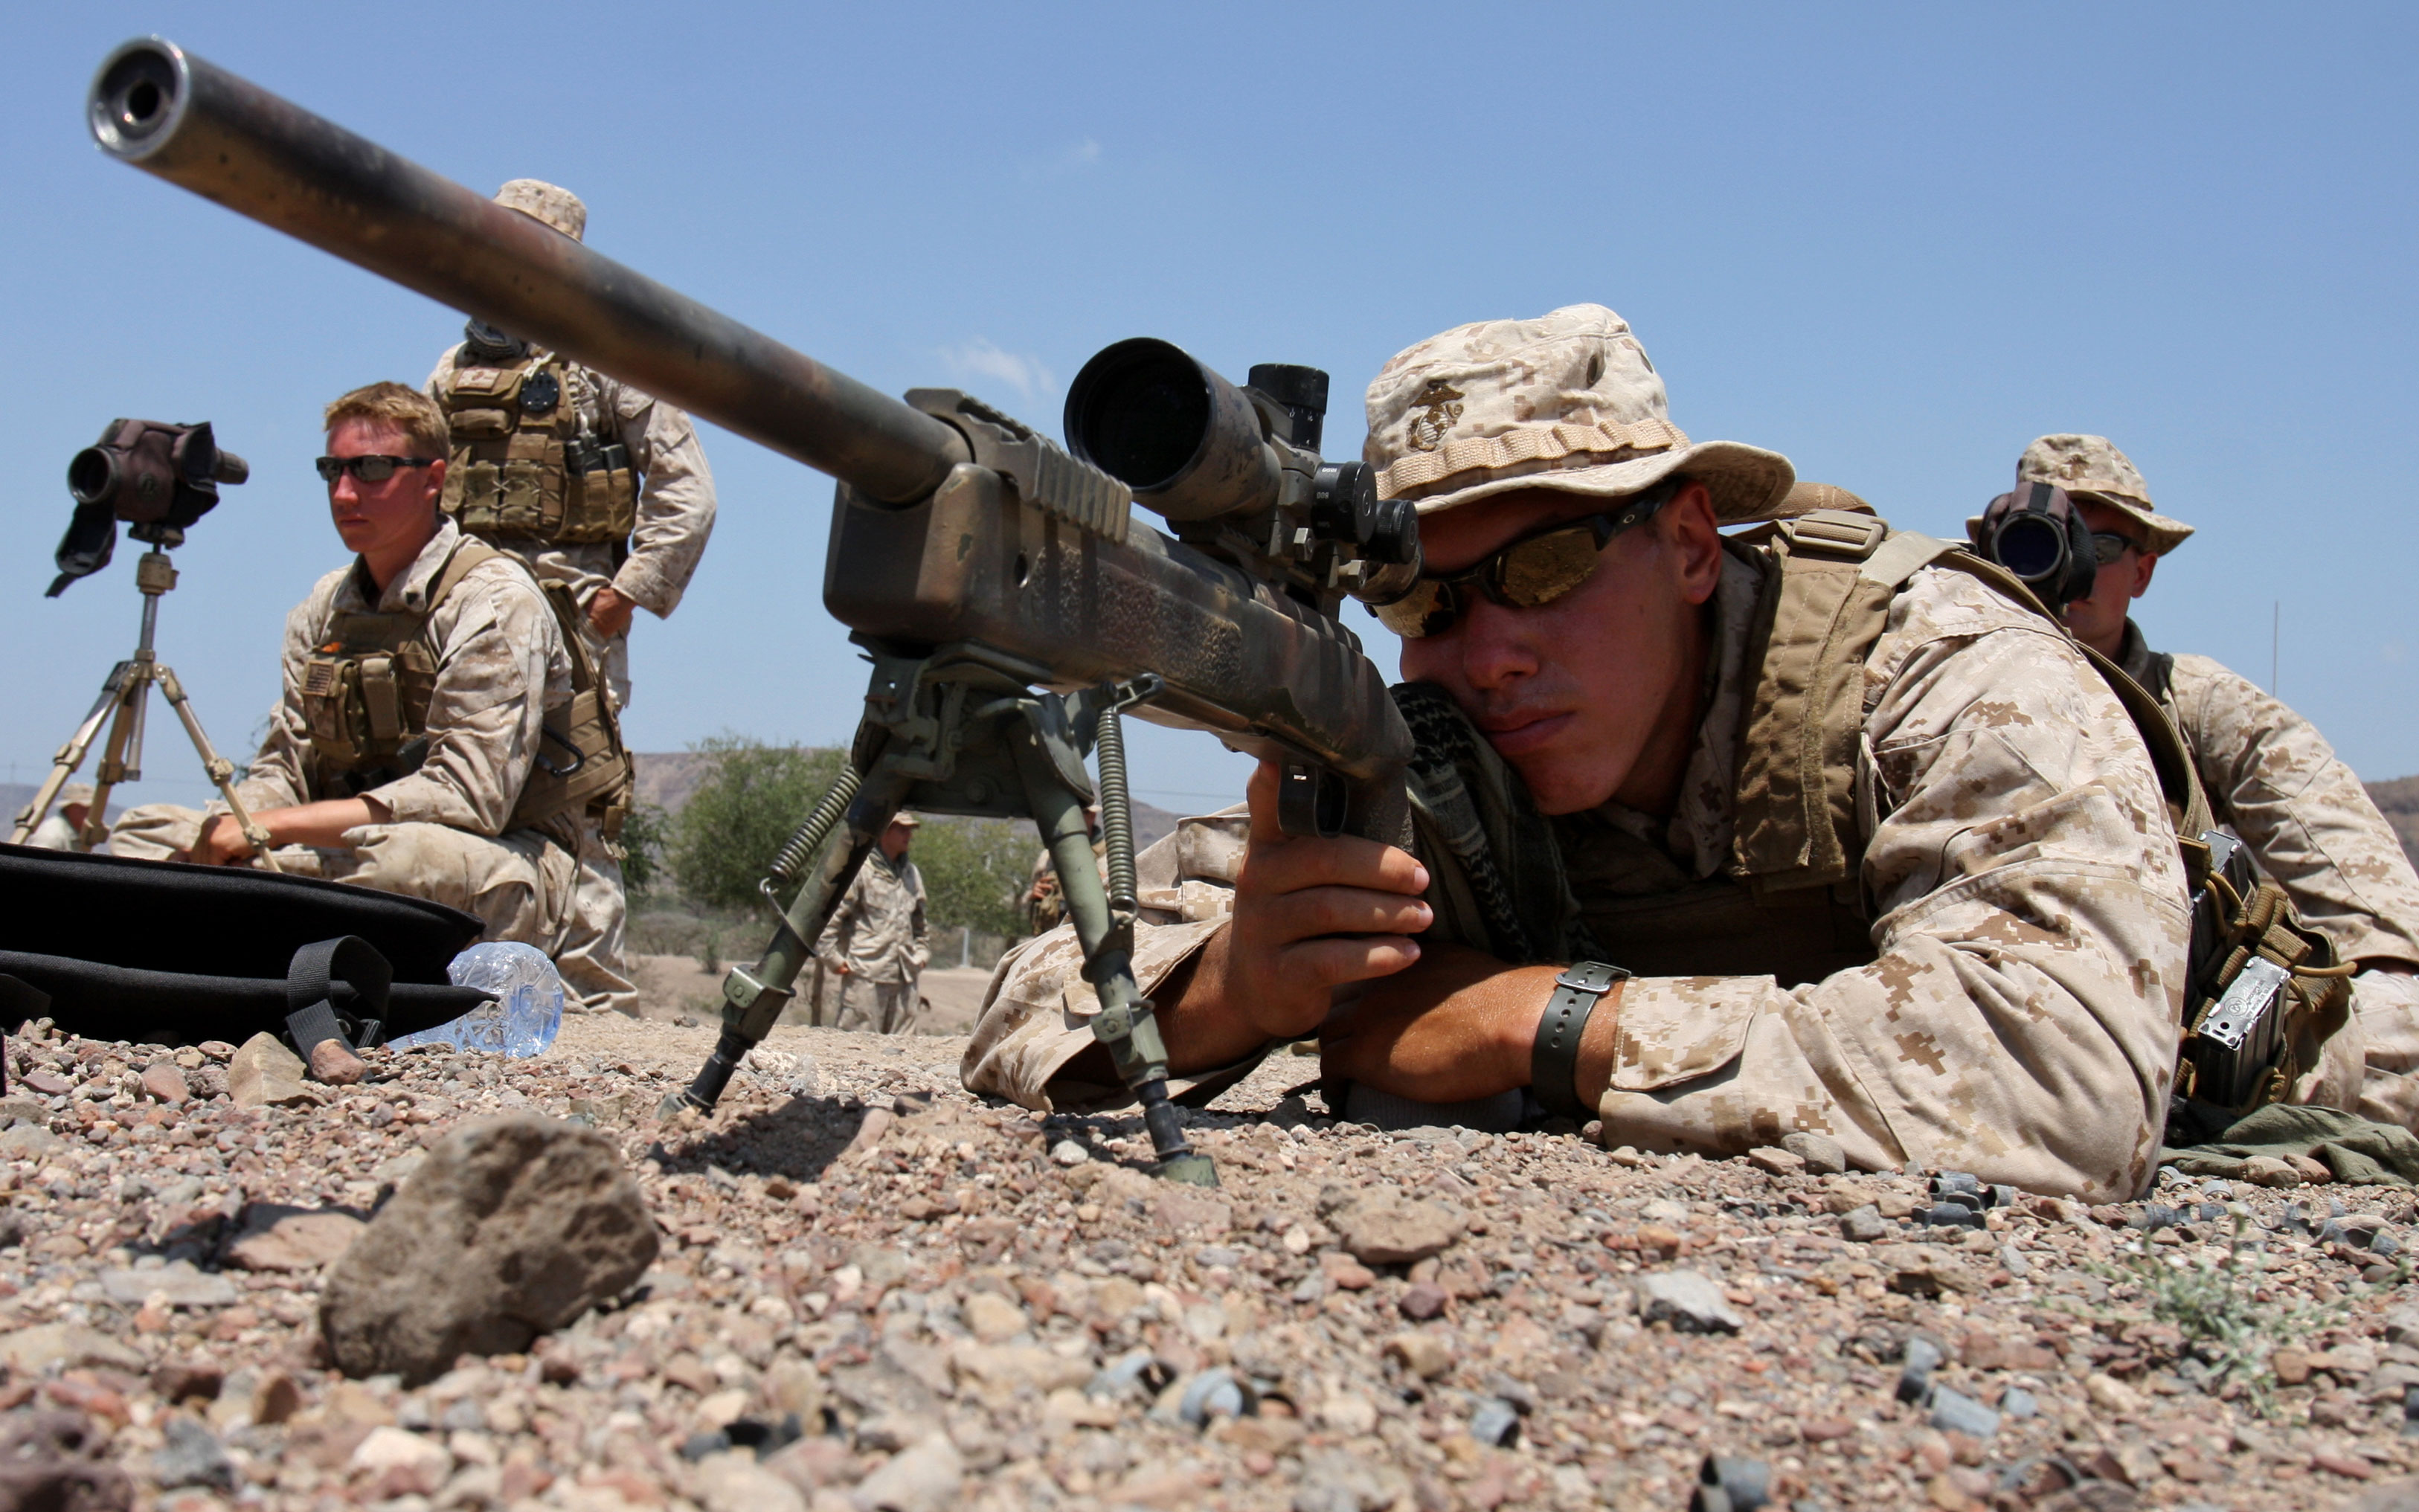 Scout Sniper | M40